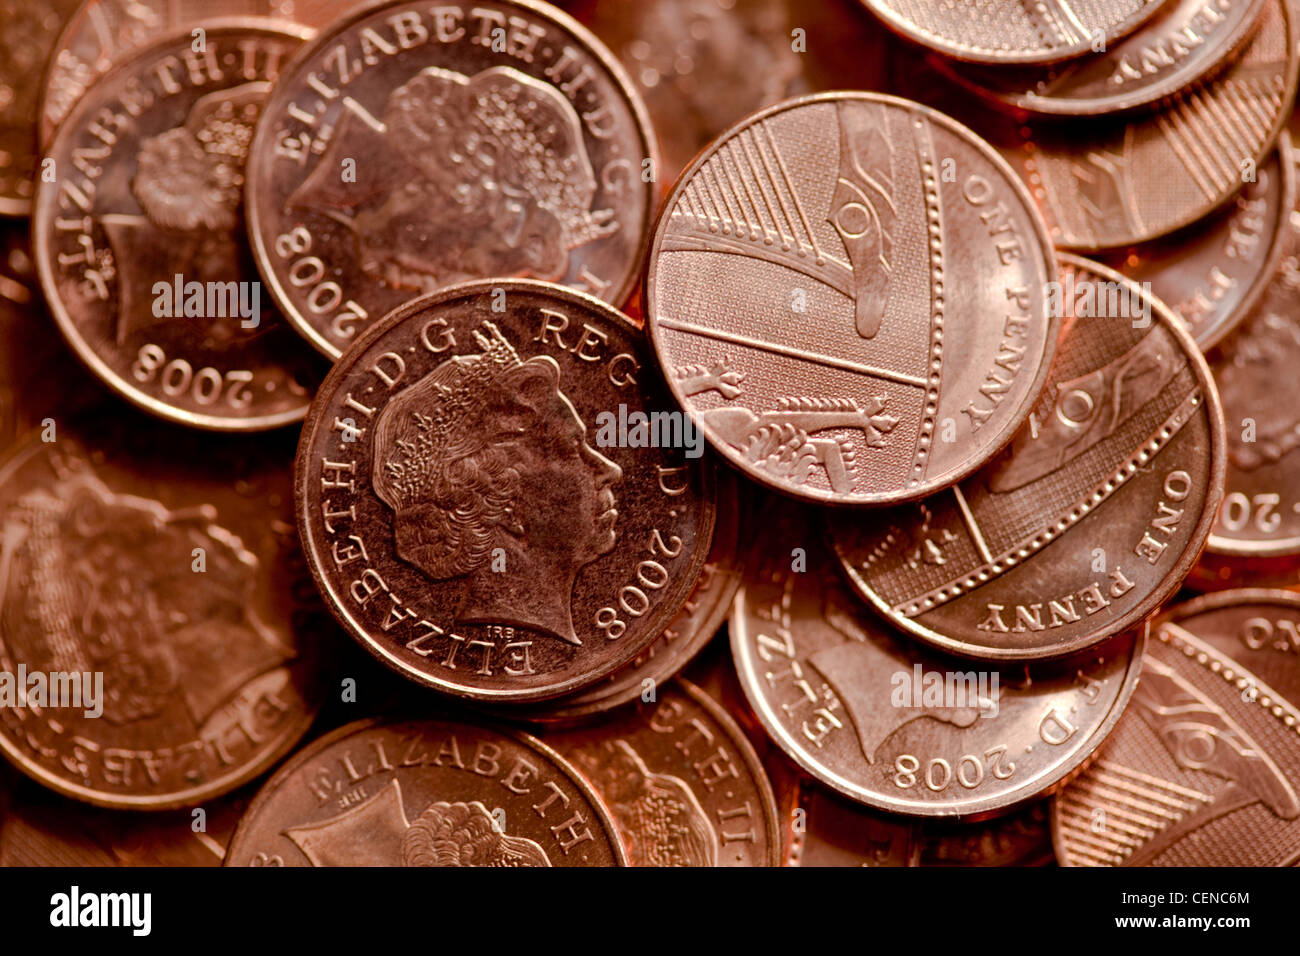 british money coinage Stock Photo